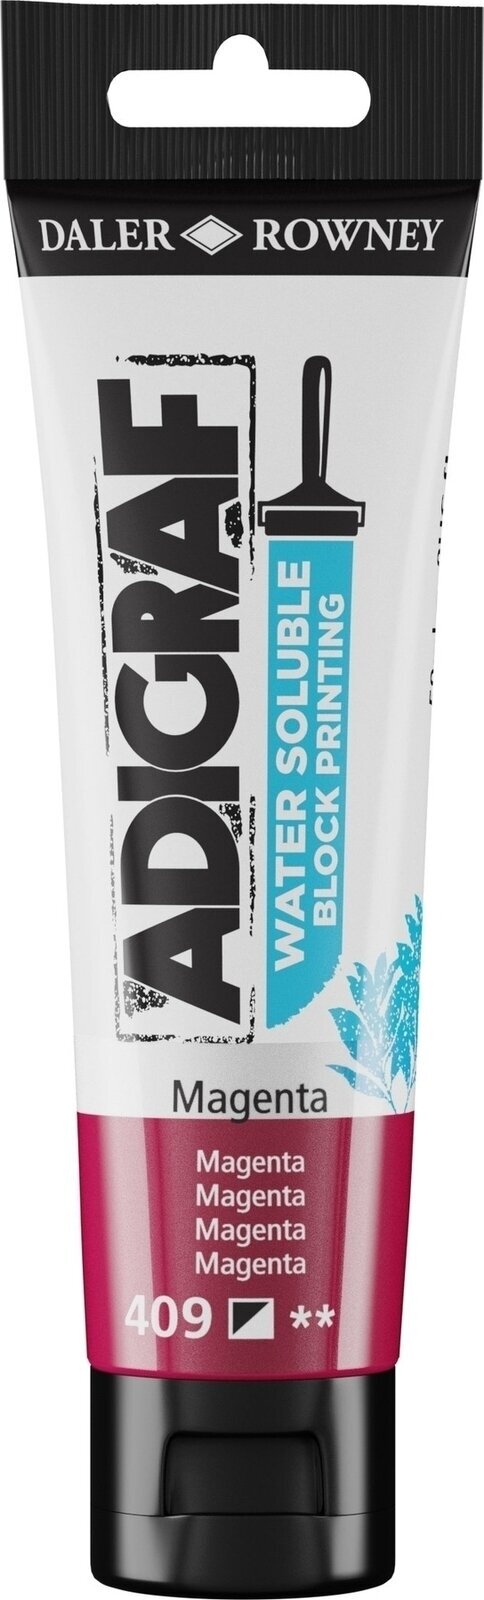 Χρώμα για λινογραφία Daler Rowney Adigraf Block Printing Water Soluble Colour Χρώμα για λινογραφία Magenta 59 ml